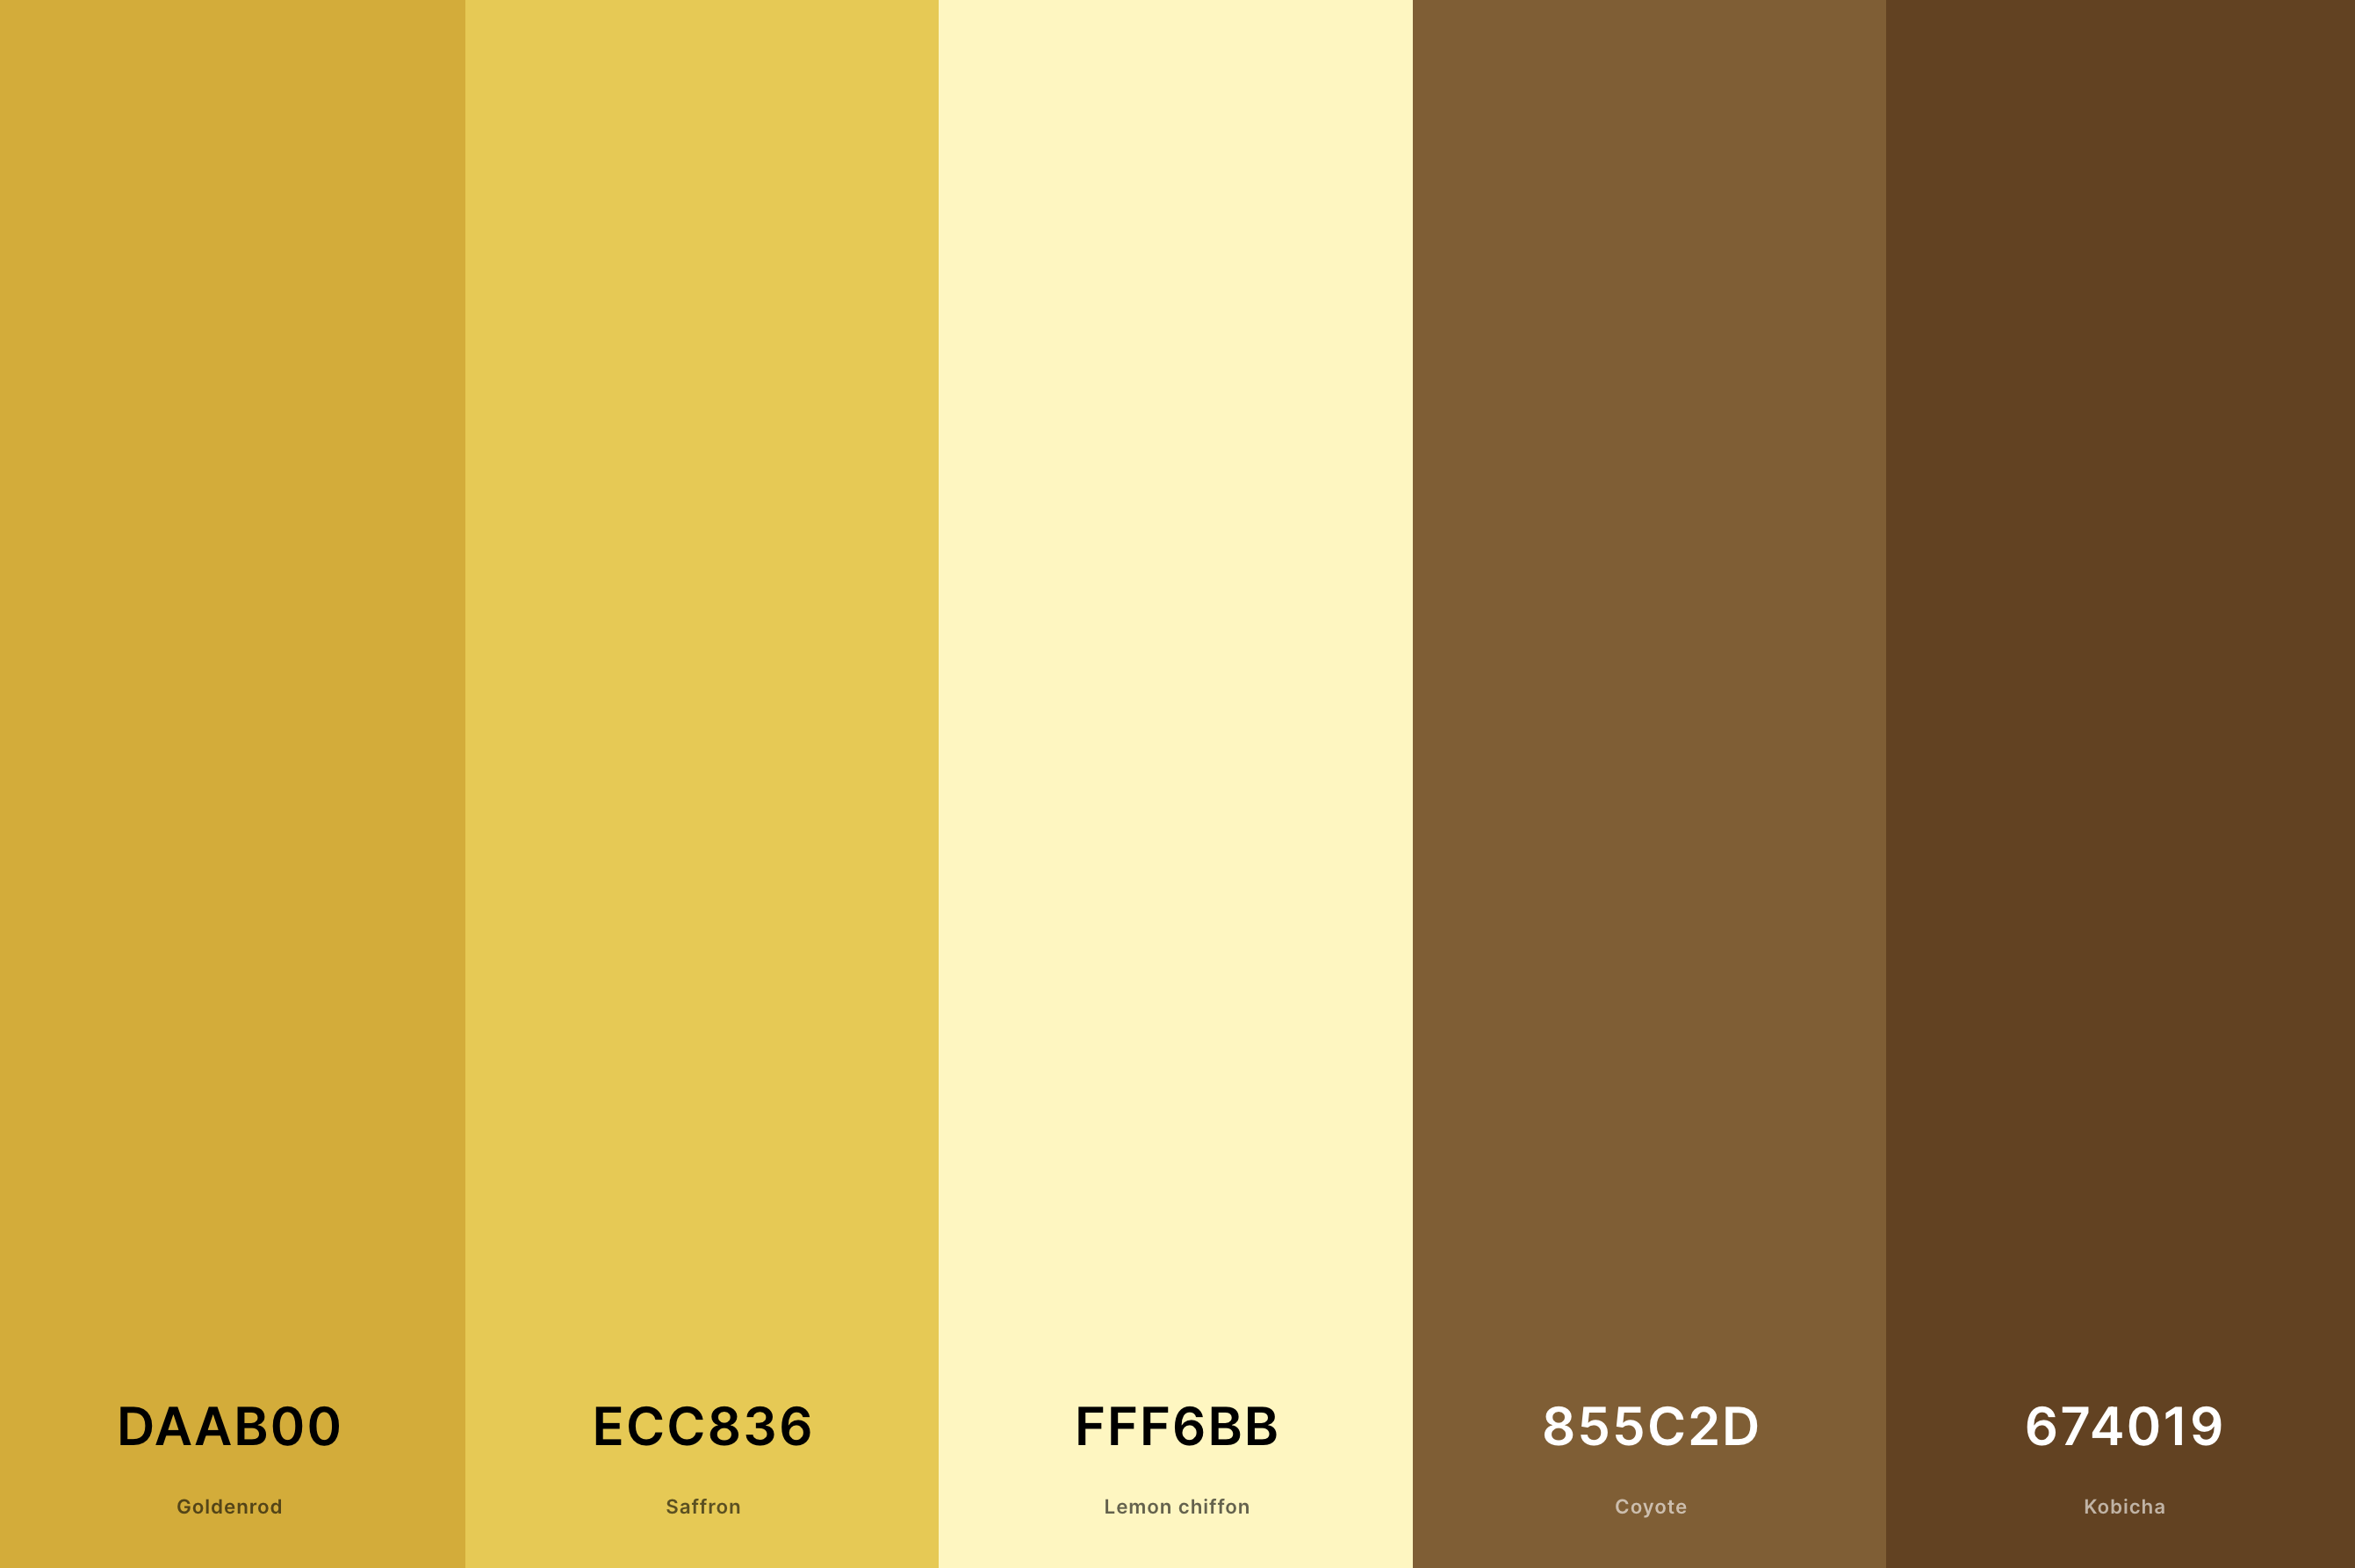 18. Brown And Gold Color Palette Color Palette with Goldenrod (Hex #DAAB00) + Saffron (Hex #ECC836) + Lemon Chiffon (Hex #FFF6BB) + Coyote (Hex #855C2D) + Kobicha (Hex #674019) Color Palette with Hex Codes